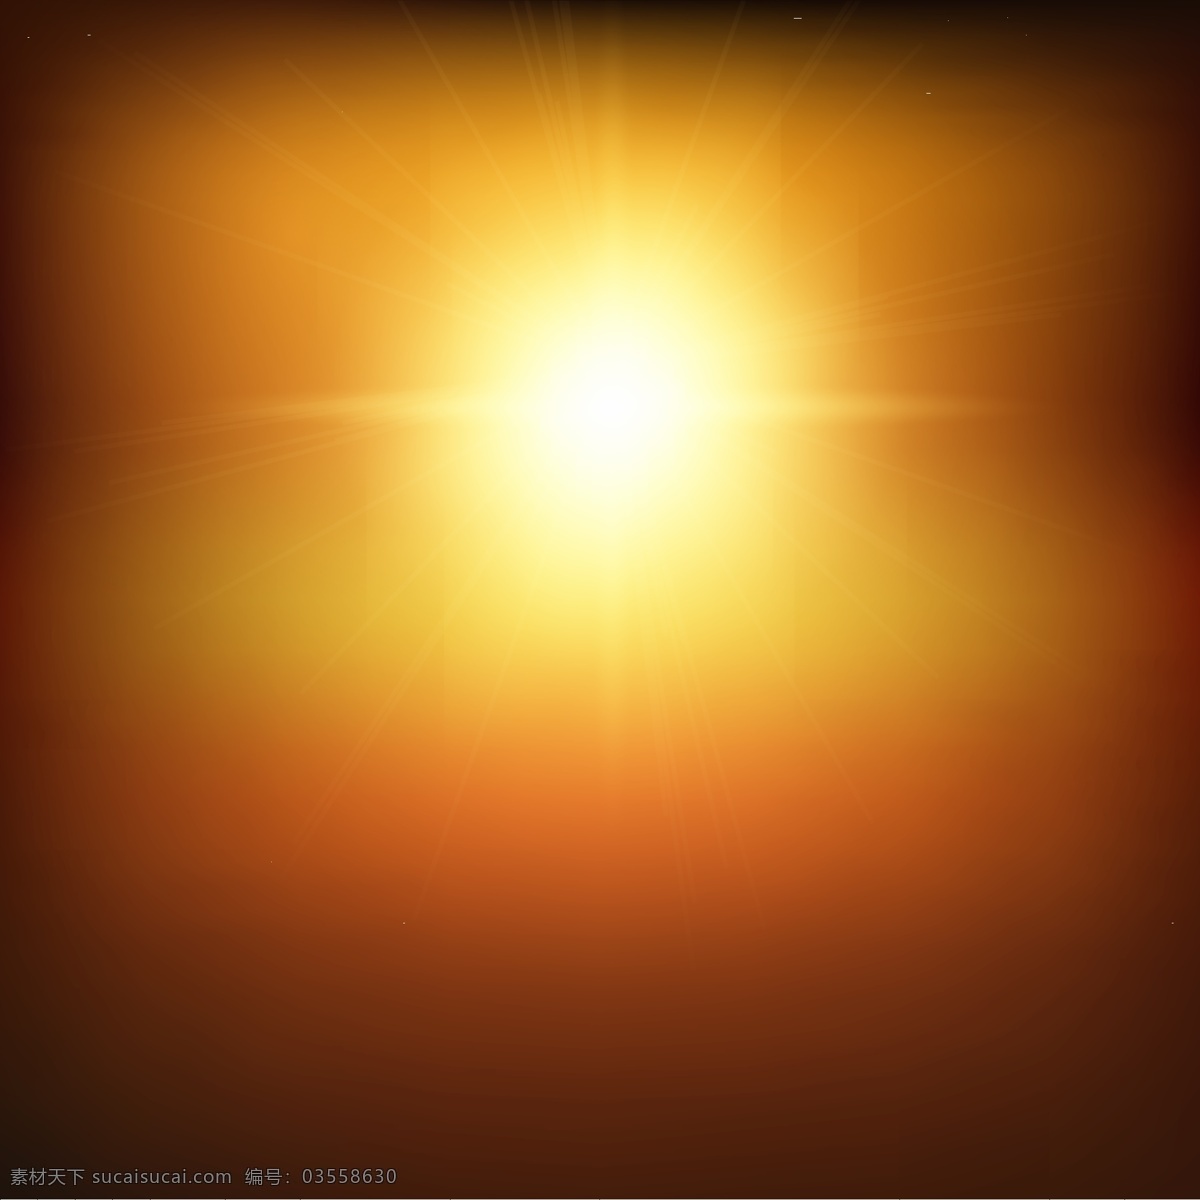 灿烂 阳光 背景图片 太阳 金色 矢量图 格式 矢量 高清图片